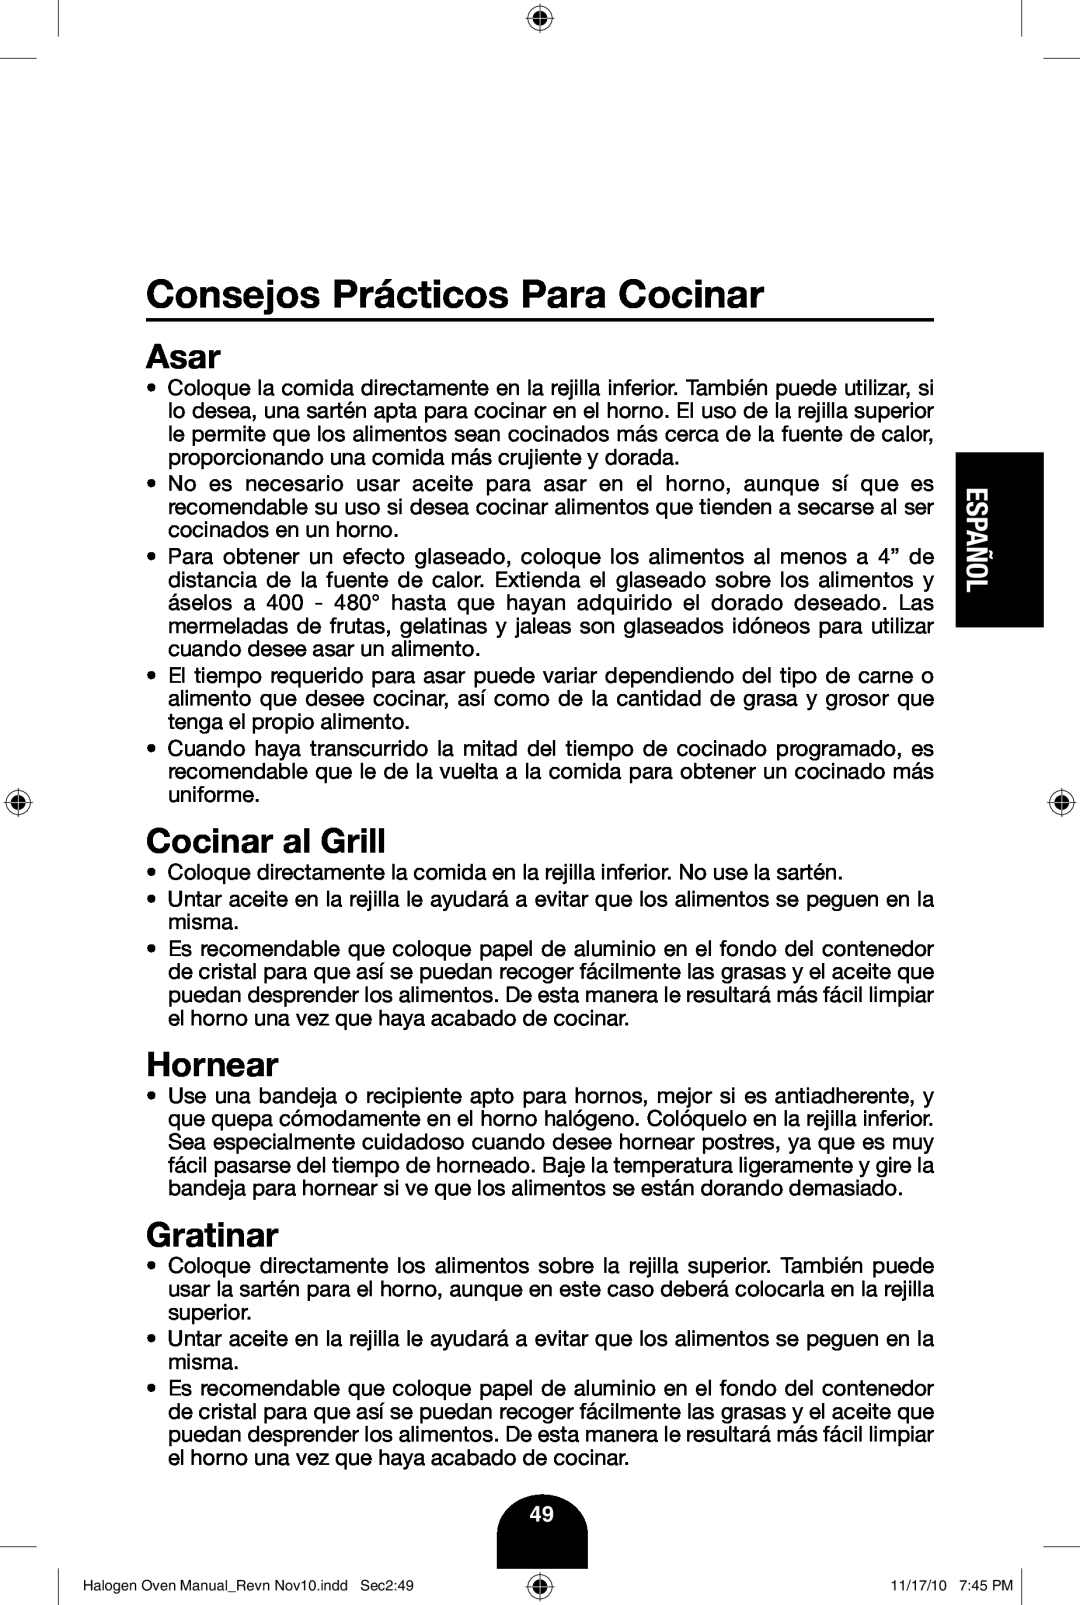 Fagor America 670040380 user manual Consejos Prácticos Para Cocinar, Asar, Cocinar al Grill, Hornear, Gratinar, Español 